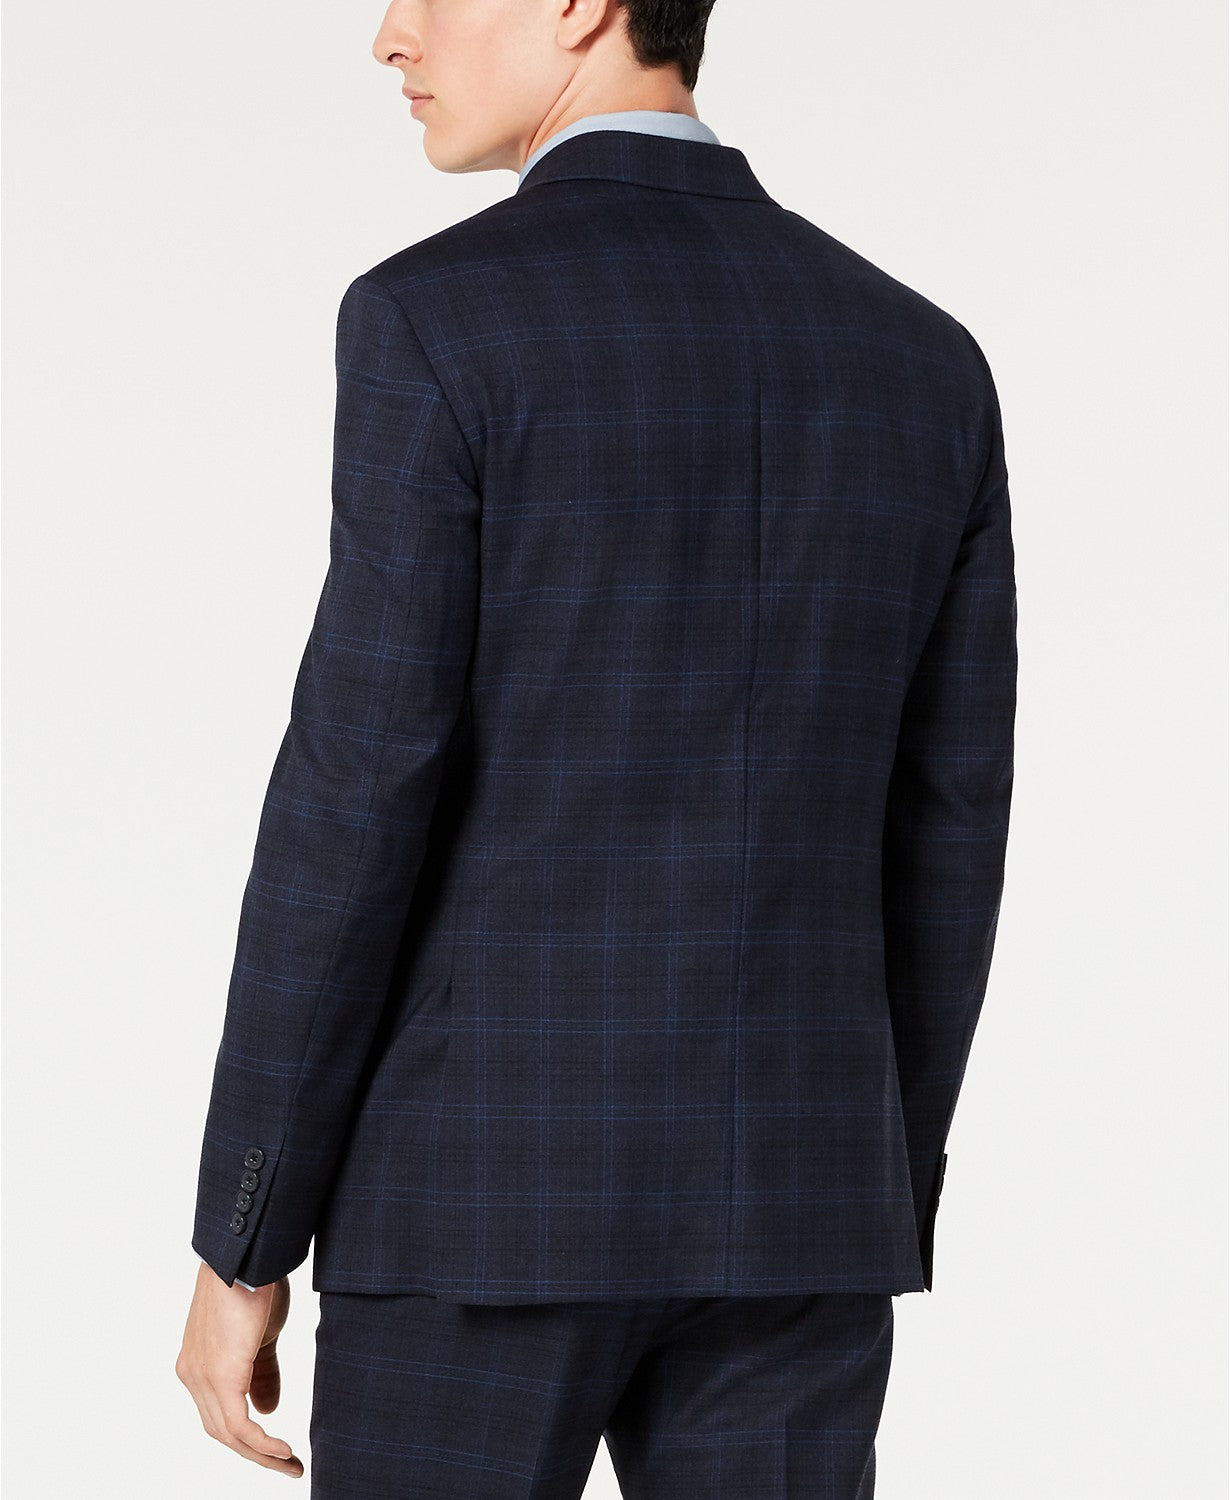 Calvin Klein Men's Navy Plaid Suit Jacket 38L Slim-Fit Stretch